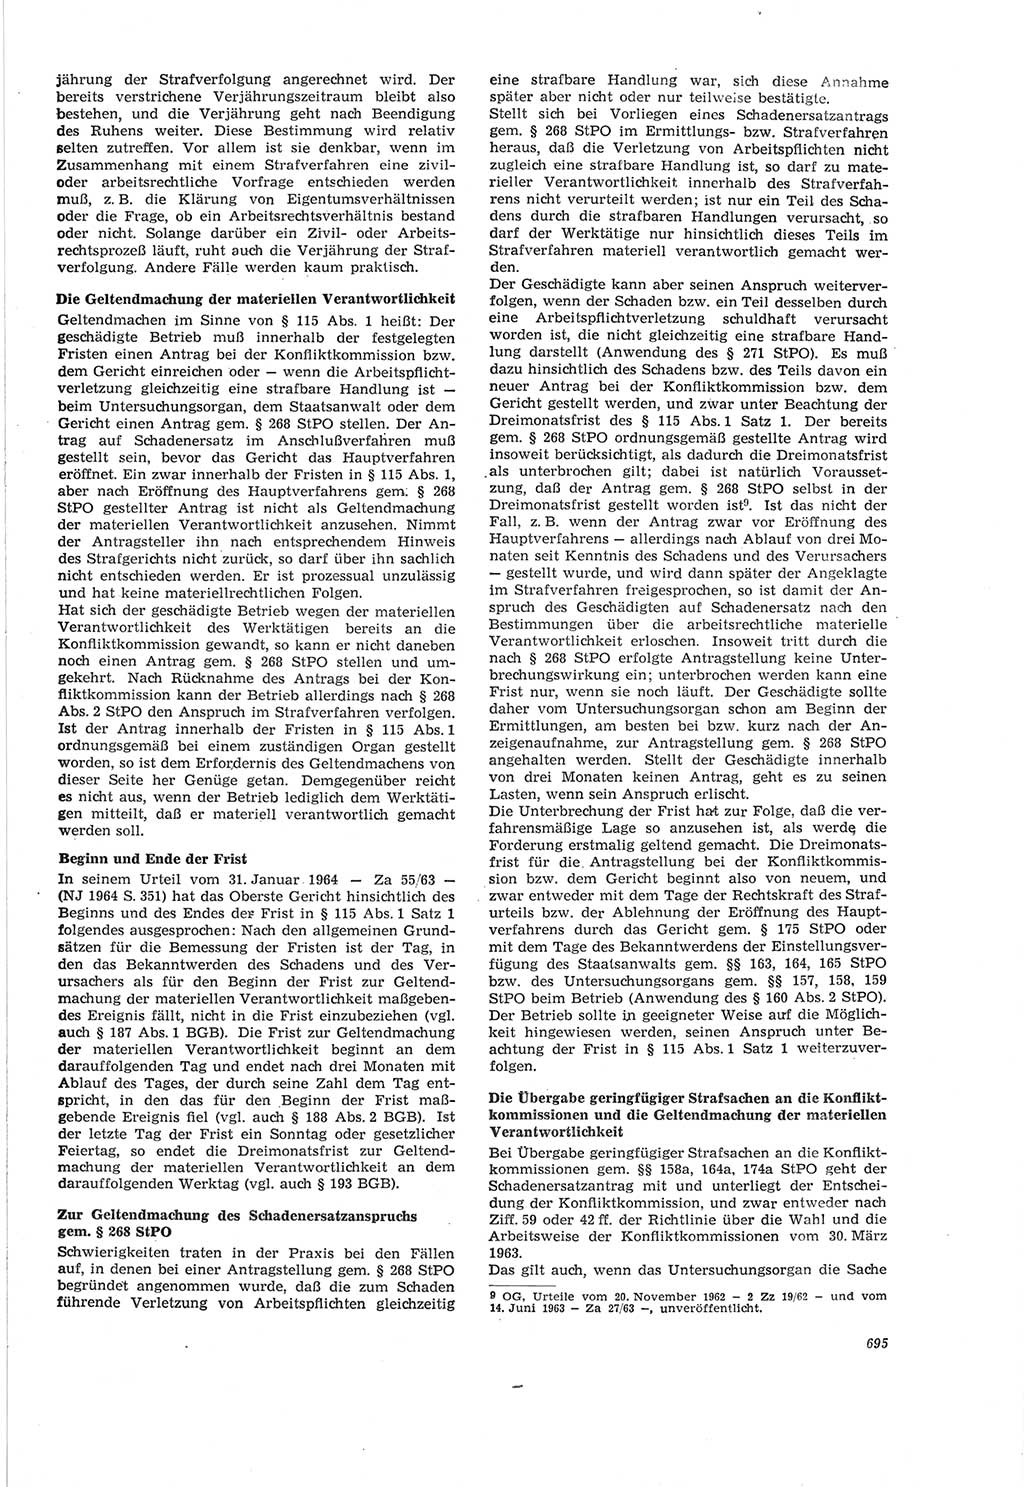 Neue Justiz (NJ), Zeitschrift für Recht und Rechtswissenschaft [Deutsche Demokratische Republik (DDR)], 18. Jahrgang 1964, Seite 695 (NJ DDR 1964, S. 695)